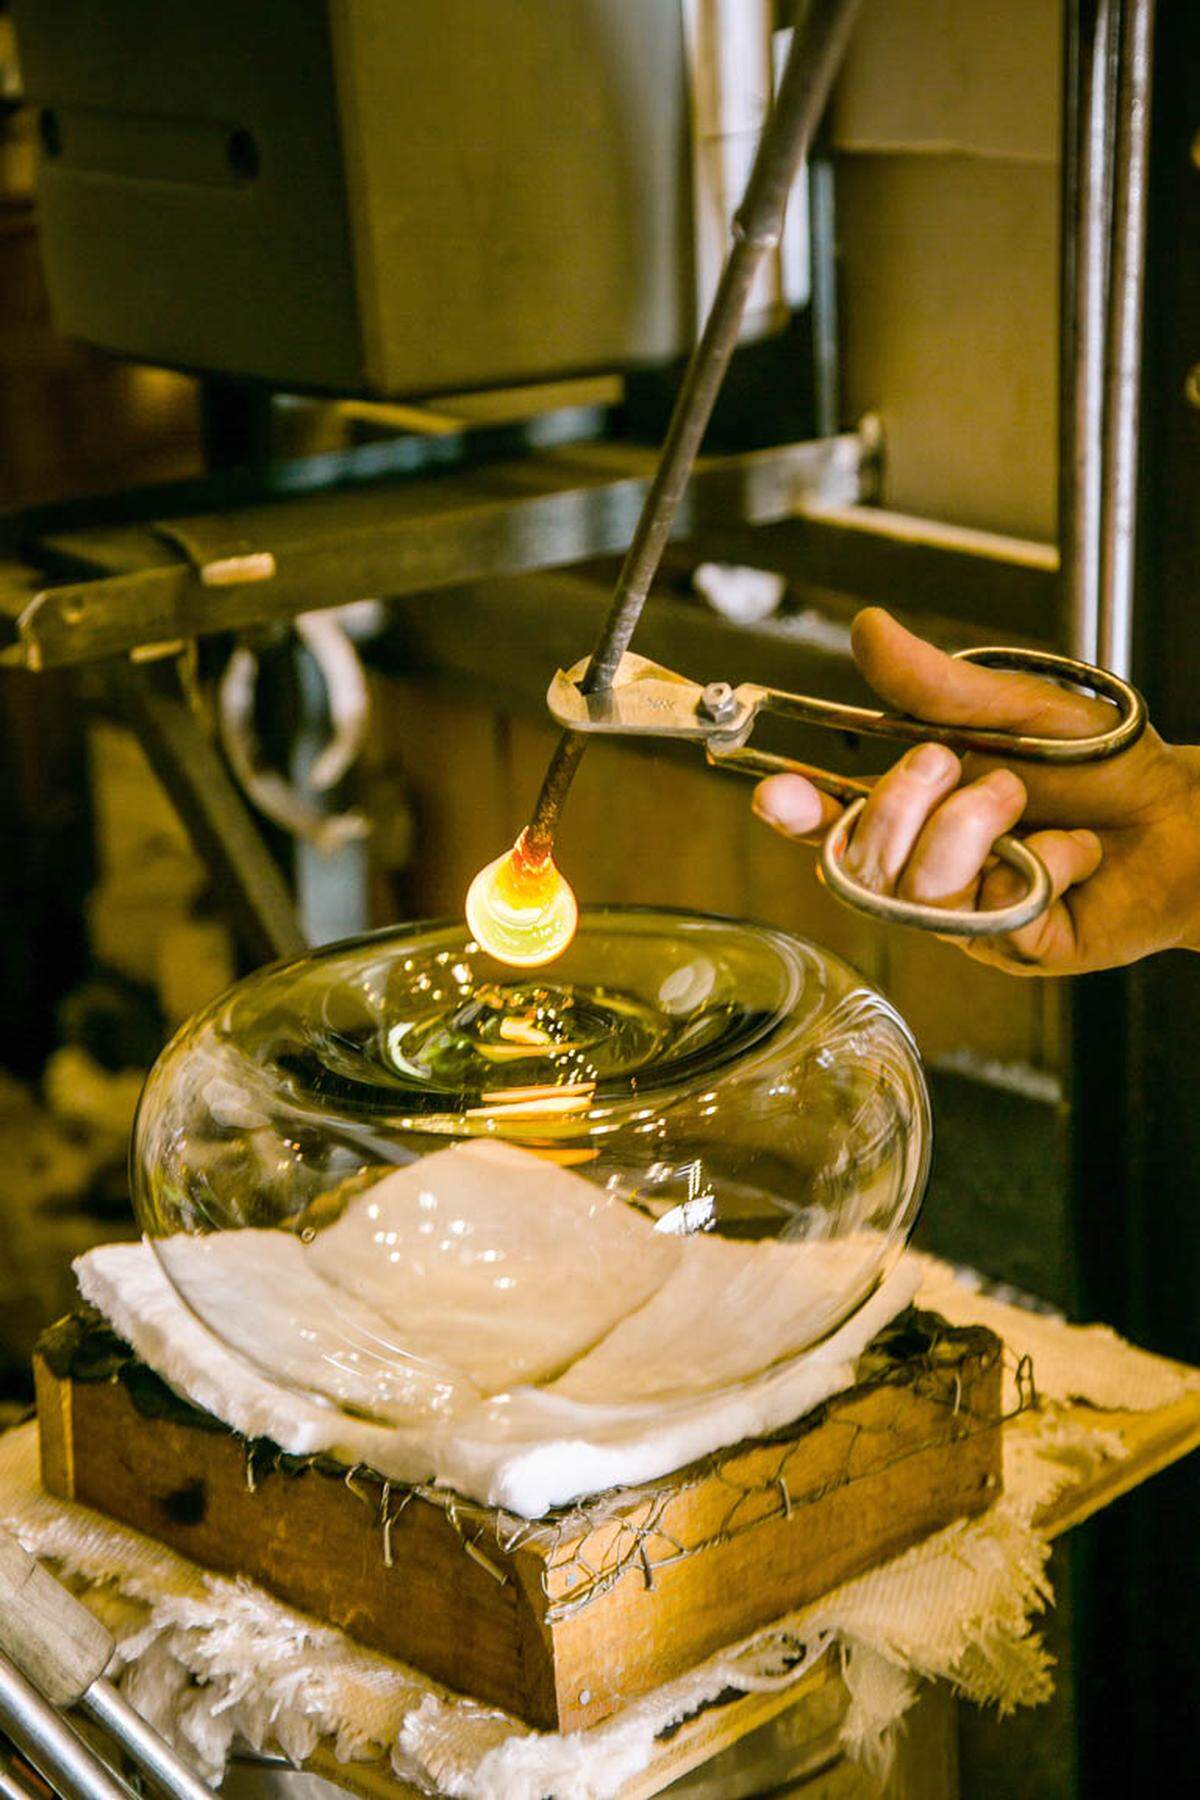 Die Glasschere trennt das heiße Objekt von der Pfeife.